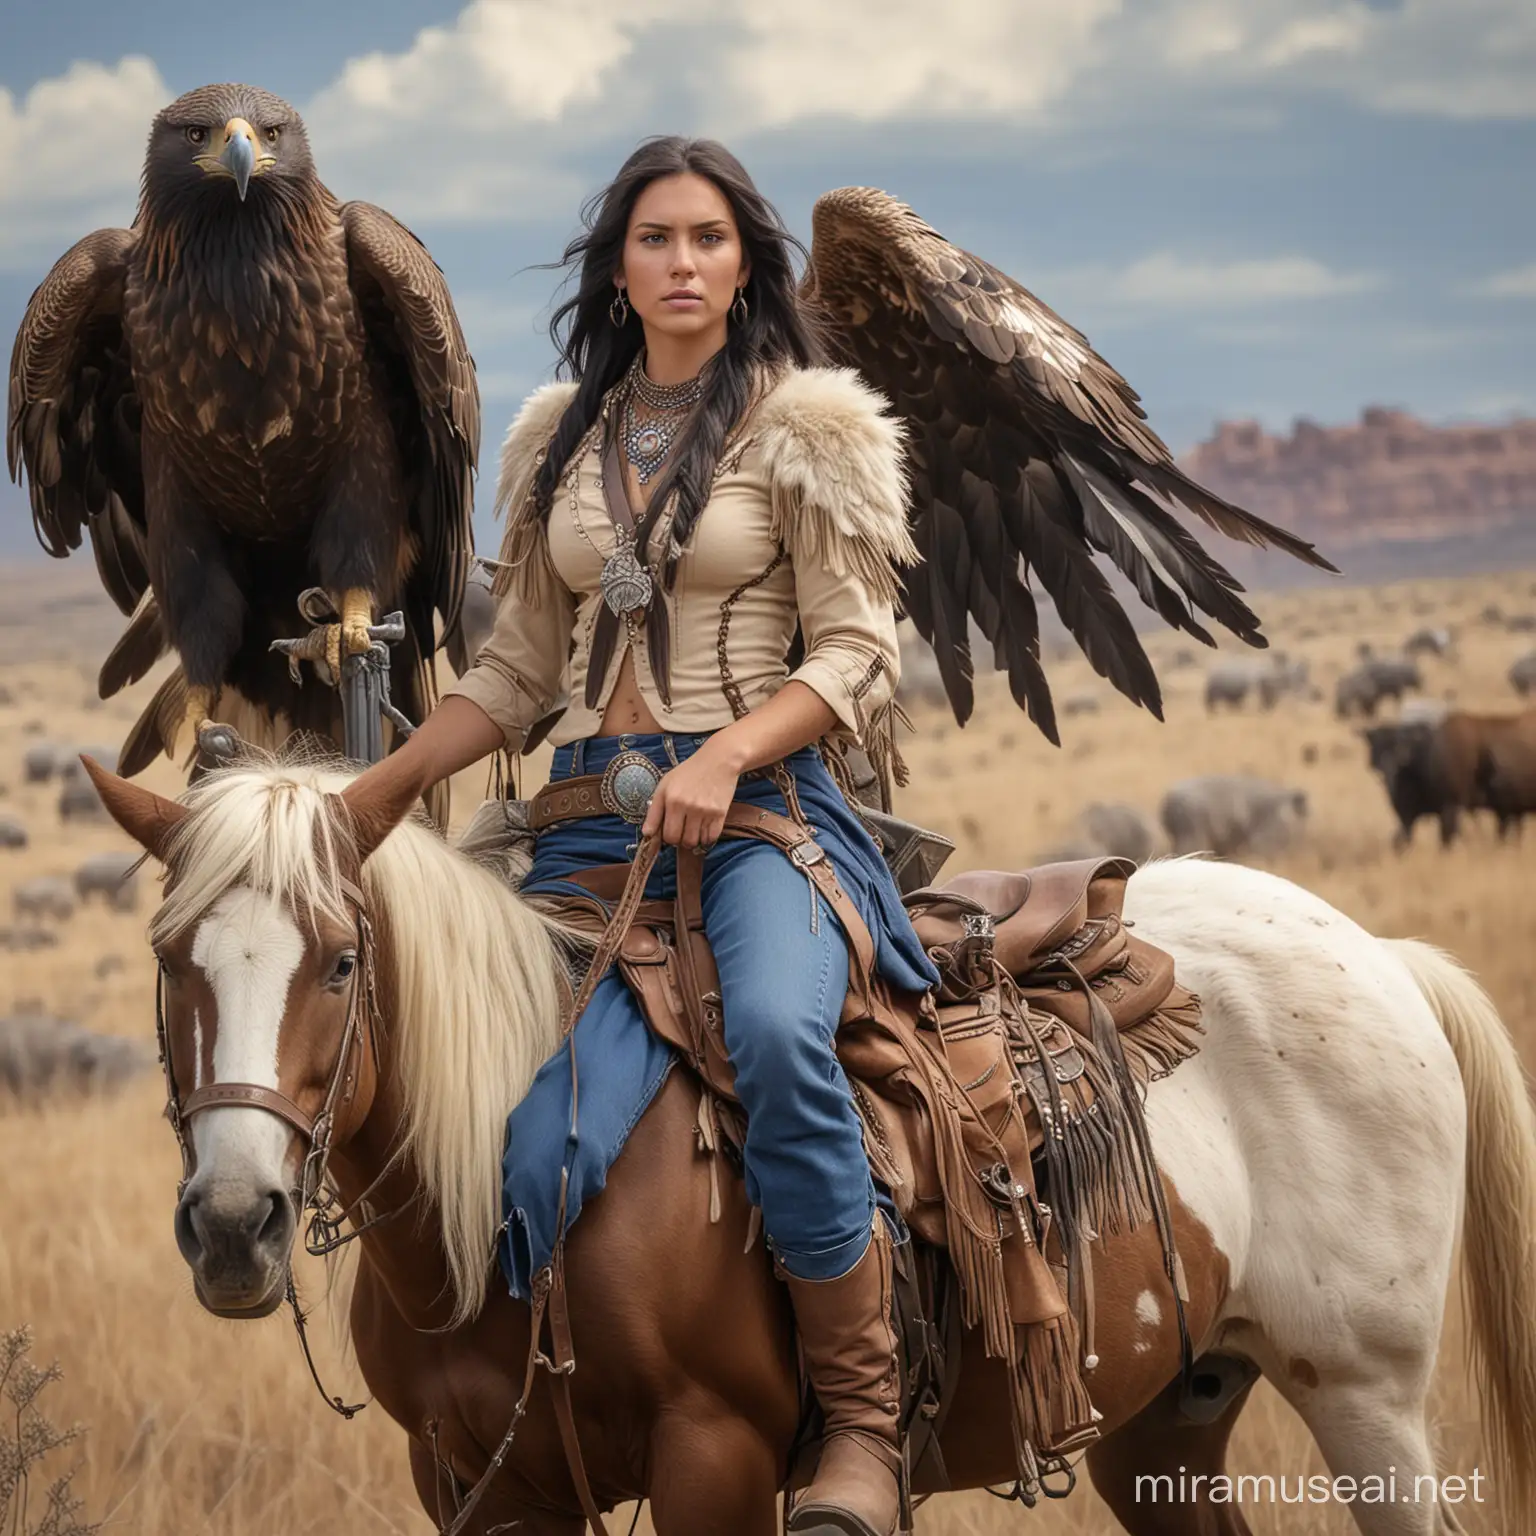 
Guerrera  apache, alta hermosa joven de cabellos negros largos, con  grandes alas de aguila que le salen de la espalda,  va caballo  u junto a ella  va una mujer vestida de vaquera cabellos rubios y ojos azules, con un gran rifle y de fondo búfalos 

